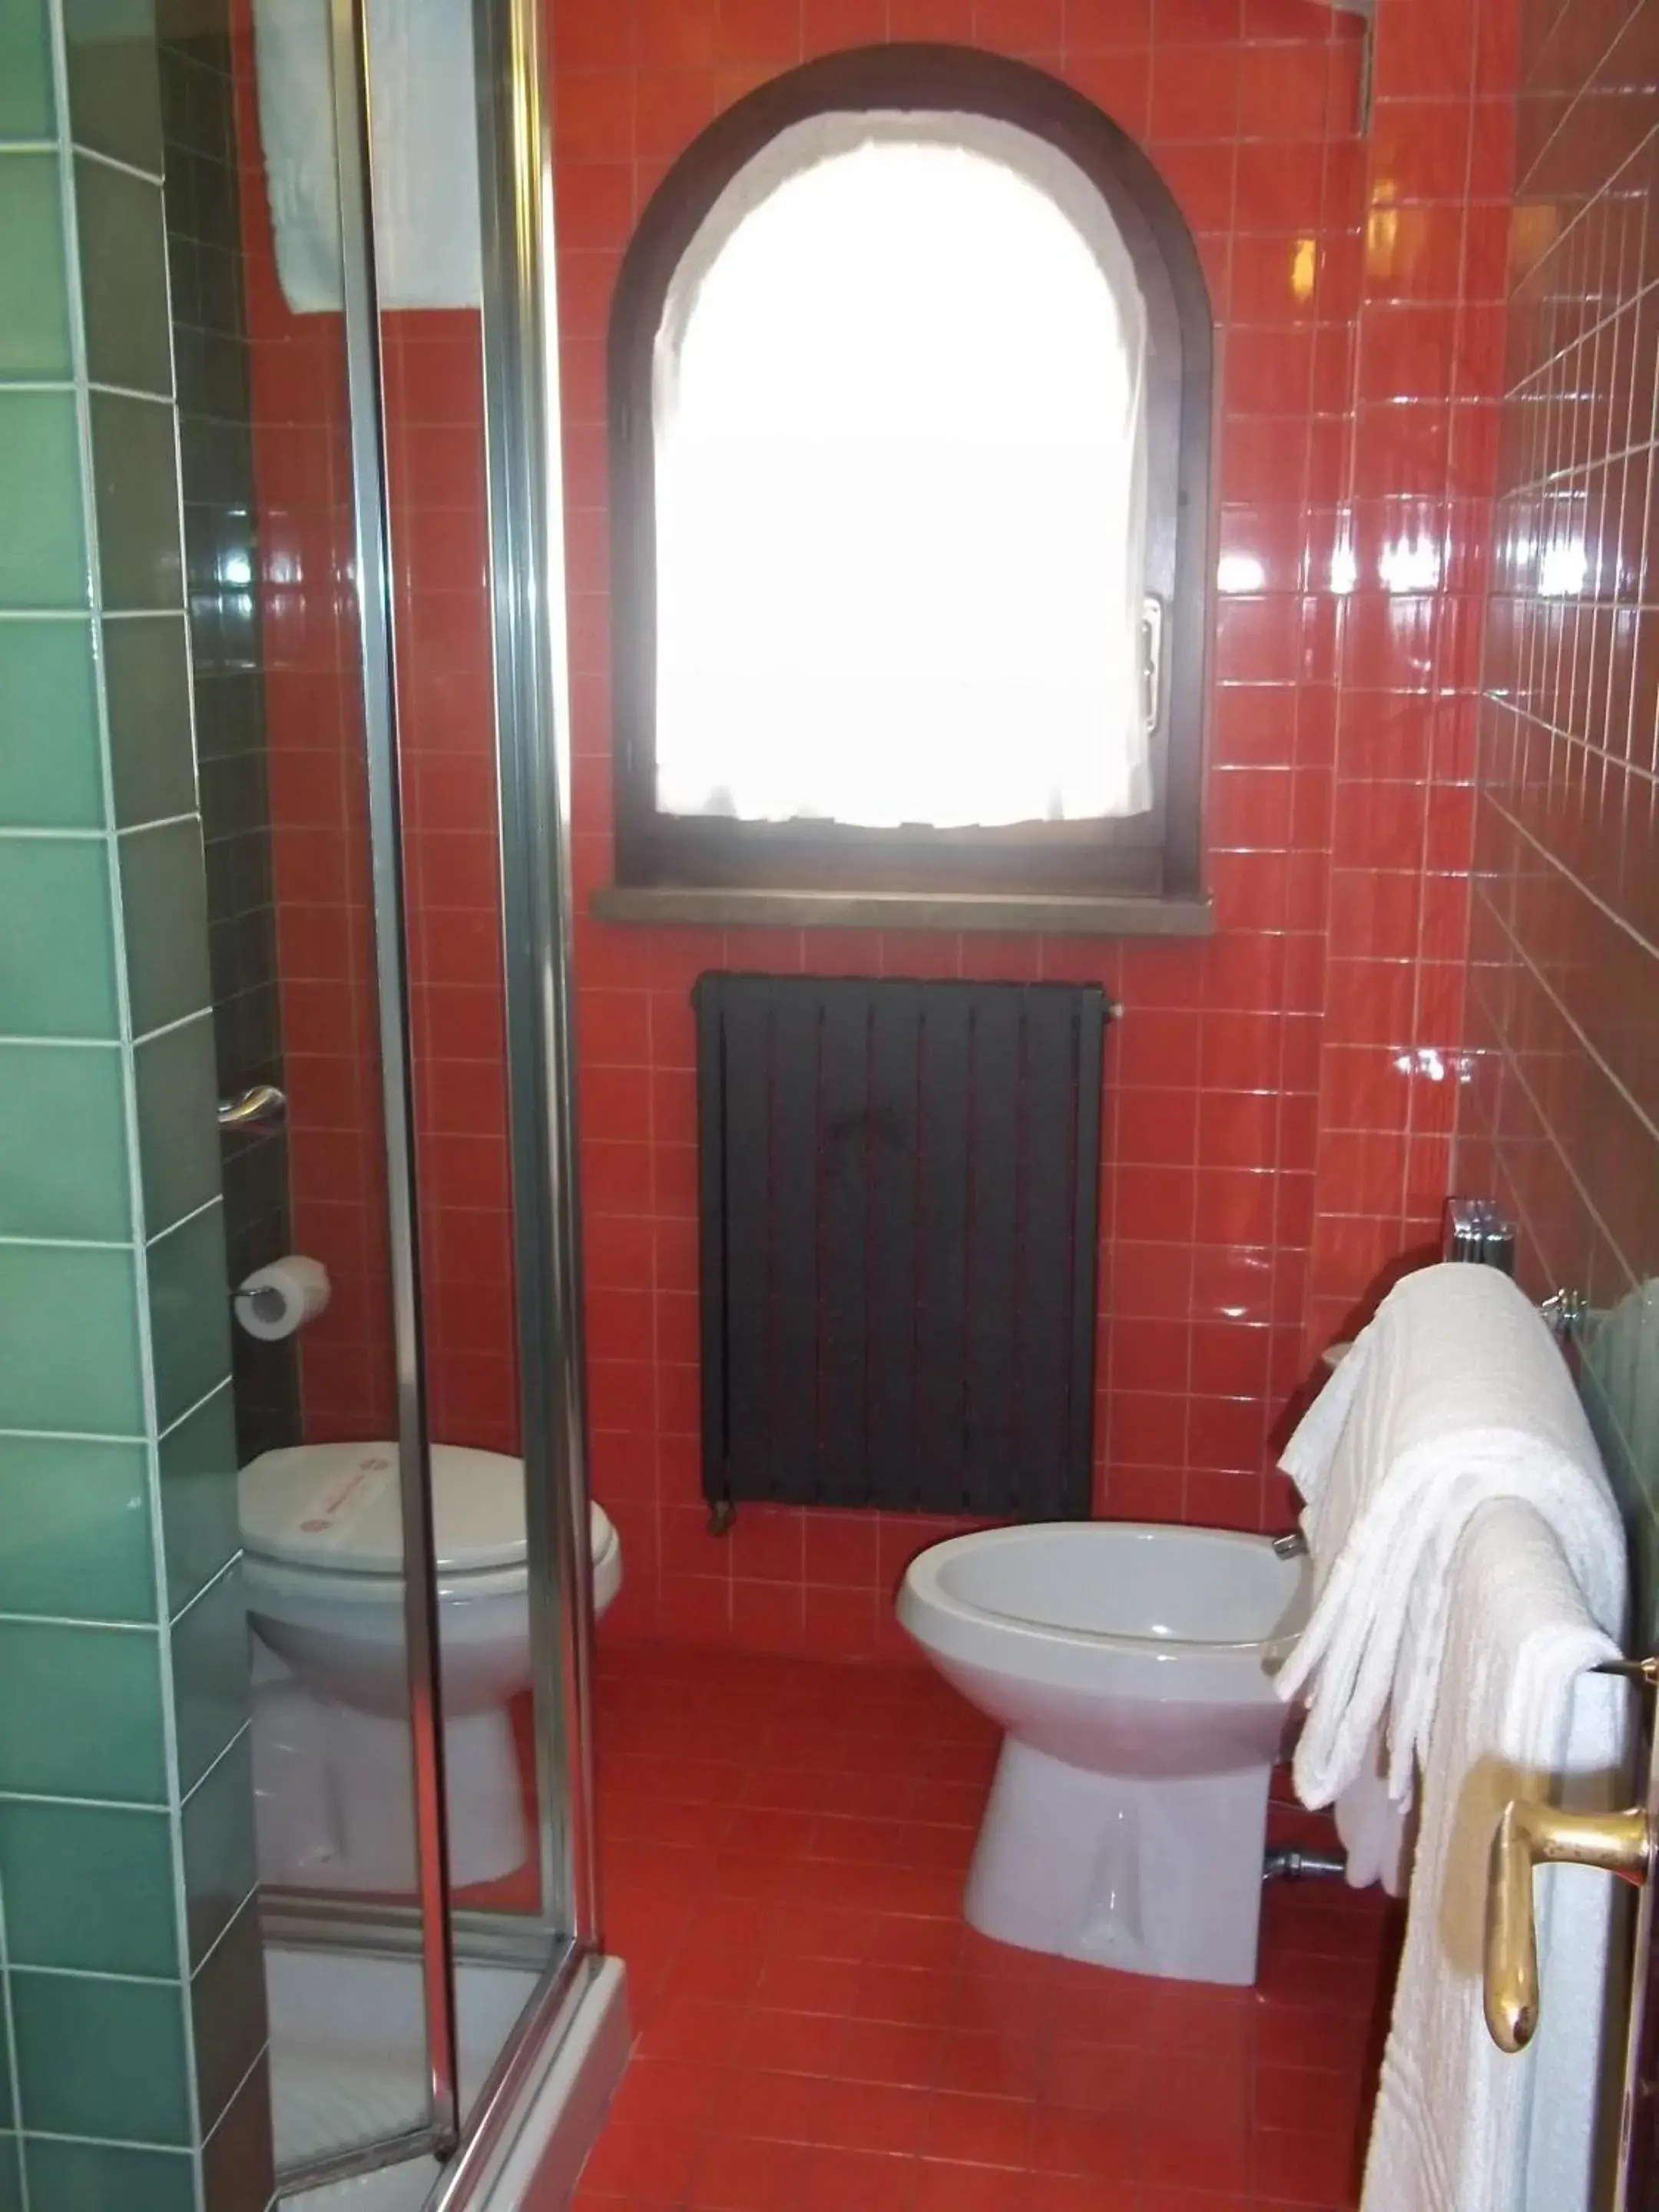 Toilet, Bathroom in Hotel Cristoforo Colombo